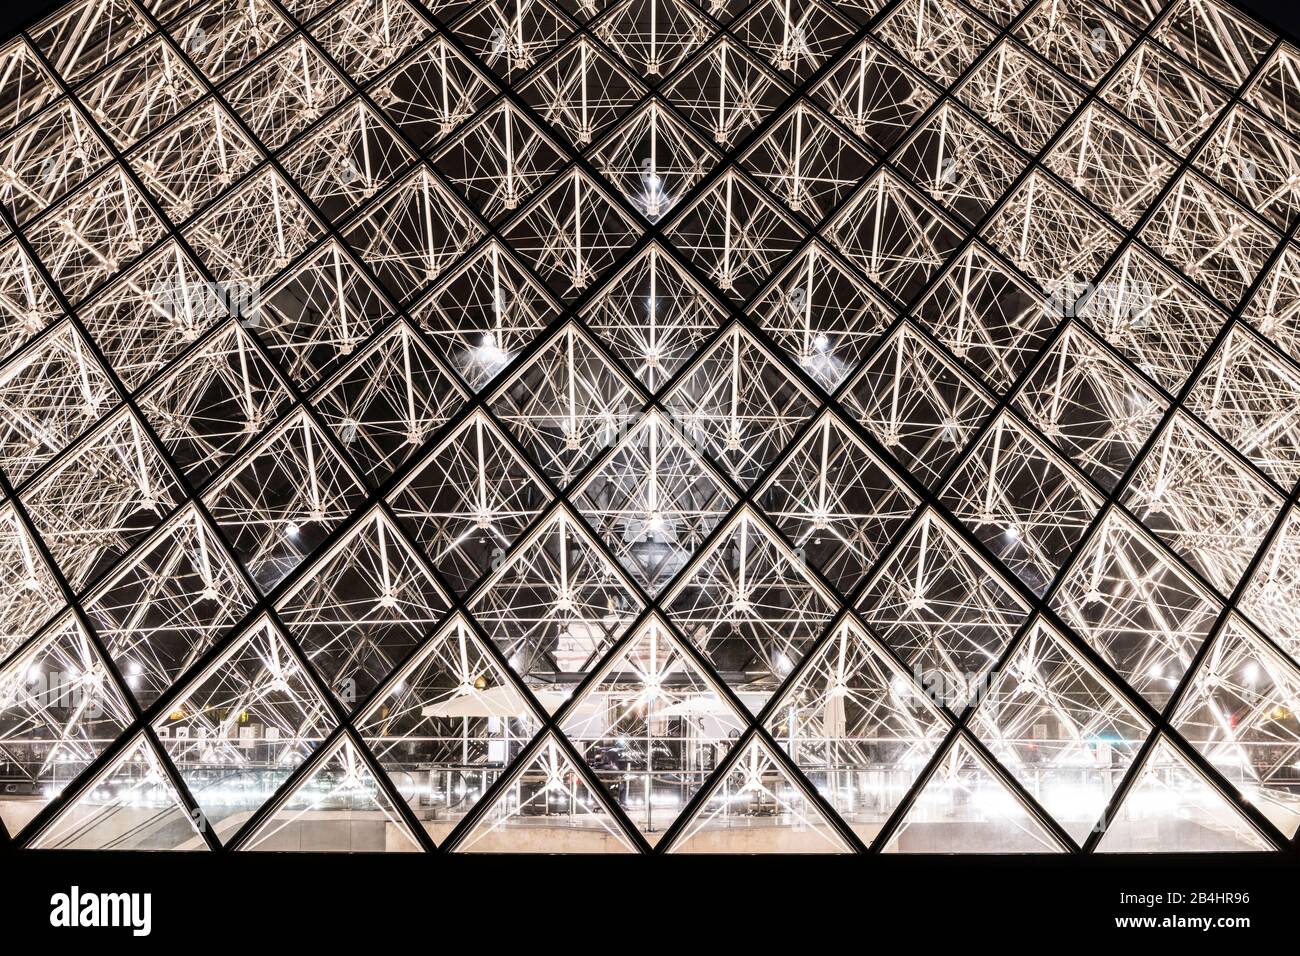 Pyramide de verre éclairée la nuit au Louvre, Paris, France, Europe Banque D'Images